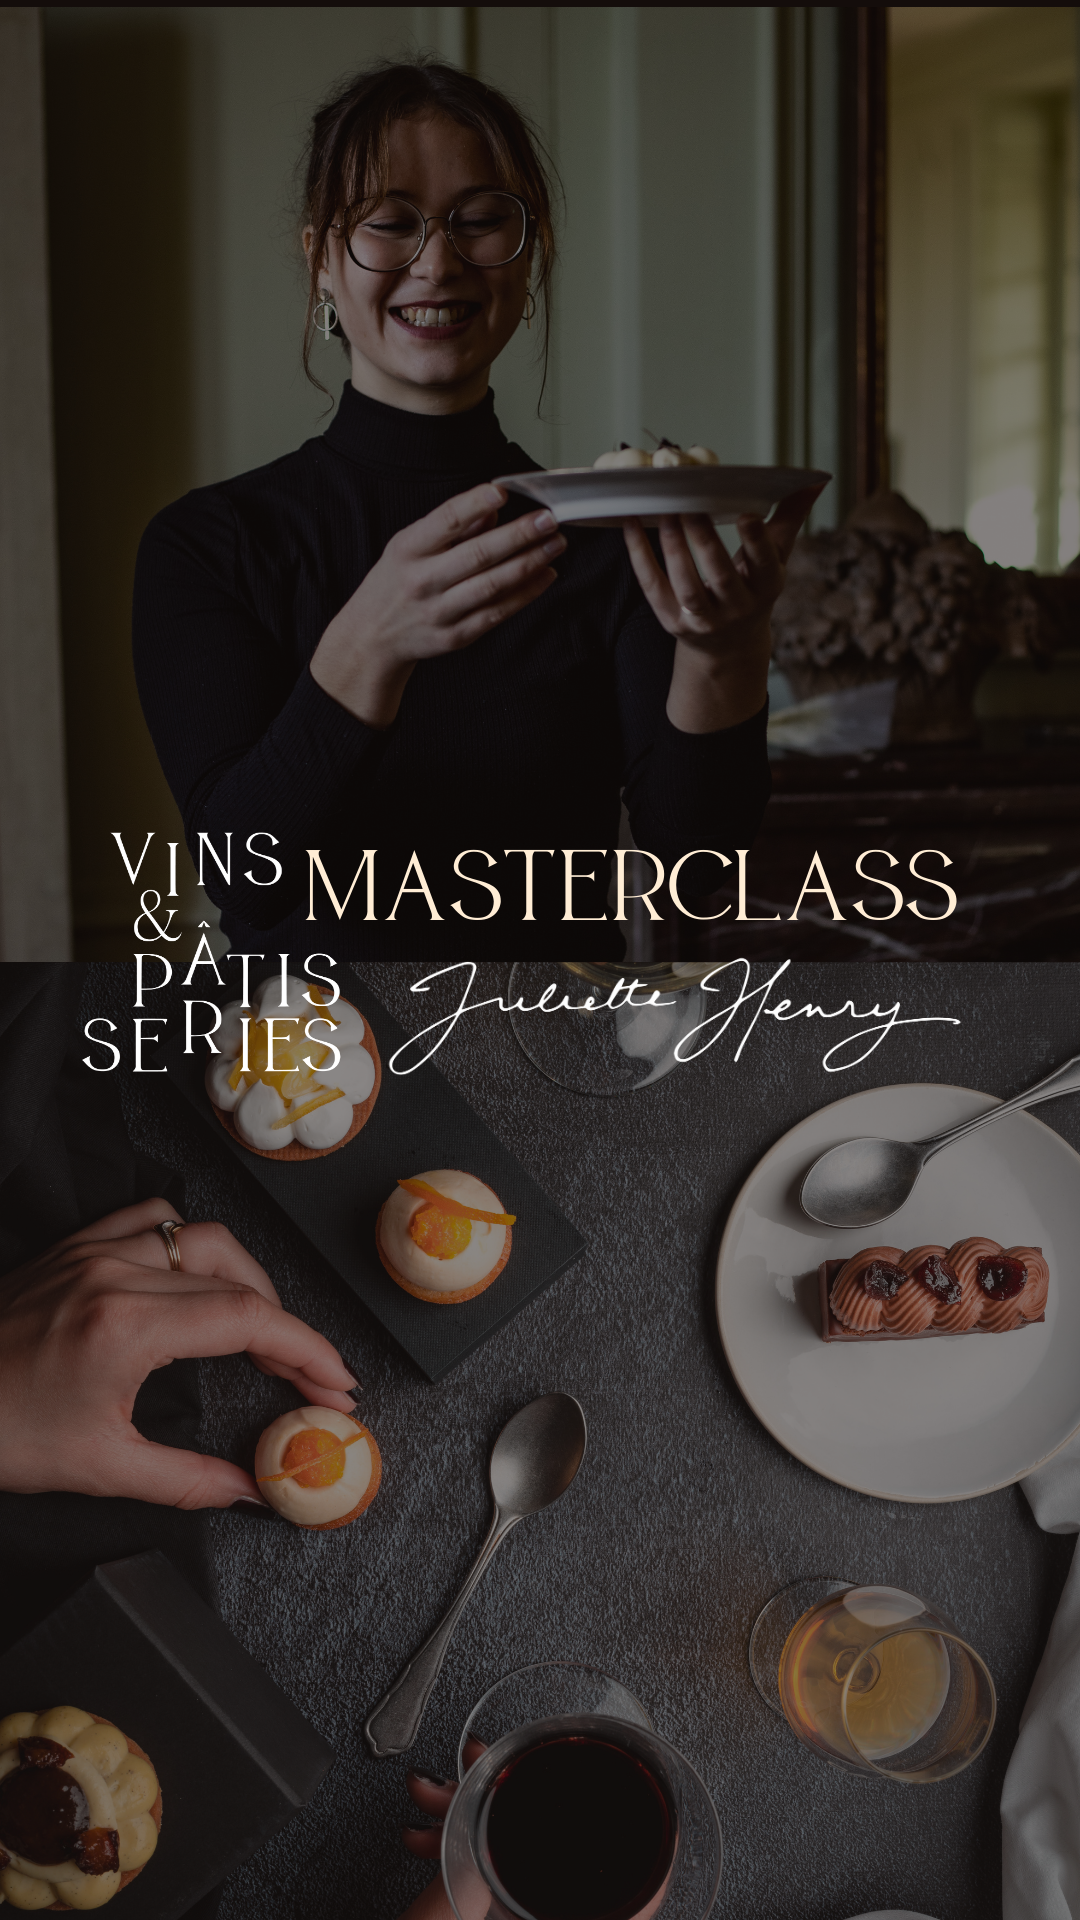 Texte sur le déroulé de la Masterclass avec démontration de pâtisserie, initiation à la dégustation du vin, goûter Vins & Pâtisseries